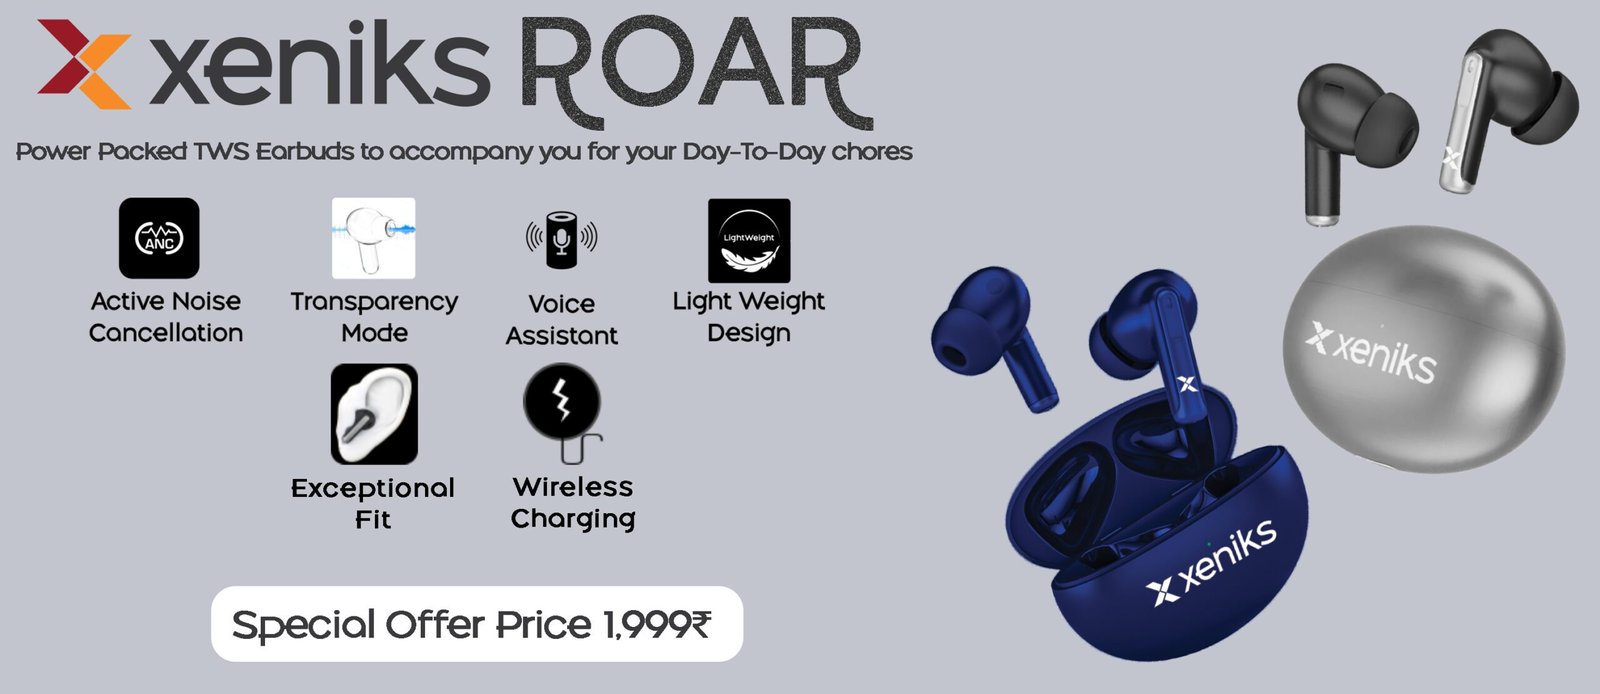 Xeniks Roar Homepage Banner